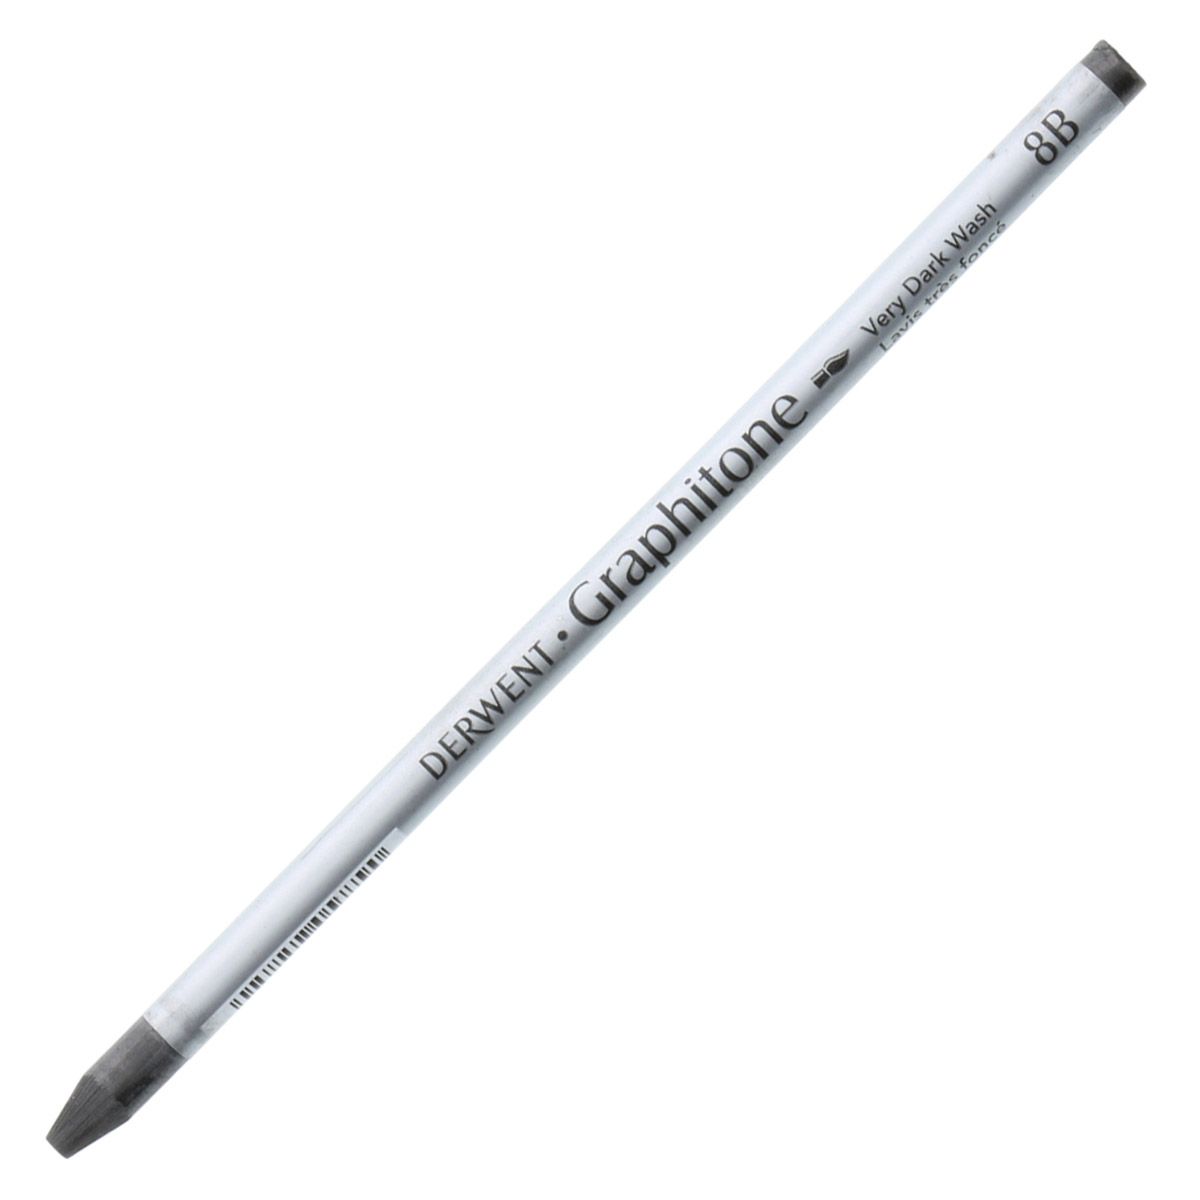 Derwent Watersoluble Graphitone Pencil - 8B Very Dark